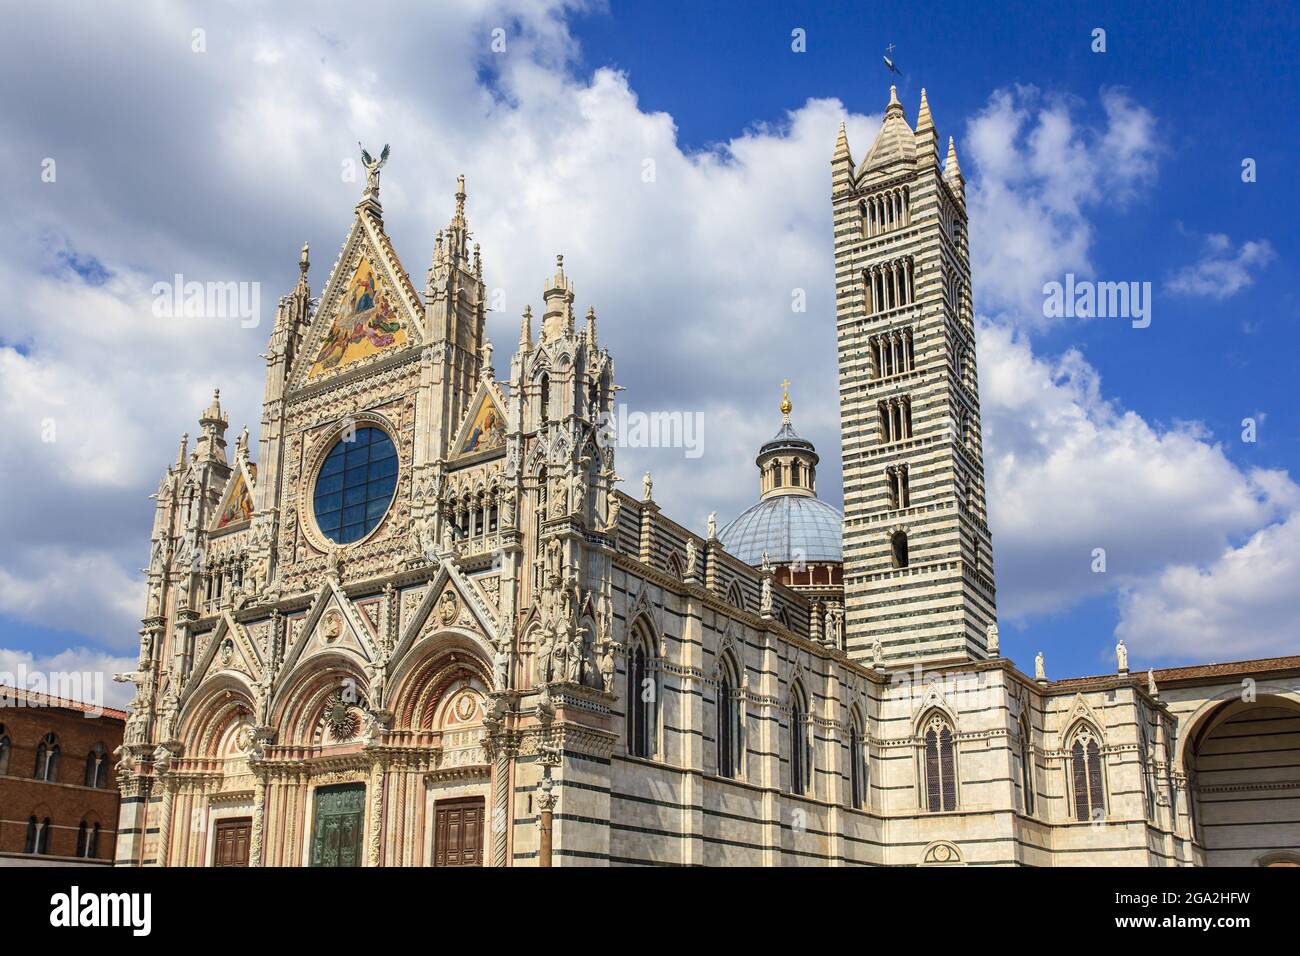 Extérieur du Duomo di Siena avec son clocher en marbre rayé et sa façade gothique; Sienne, province de Sienne, Toscane, Italie Banque D'Images